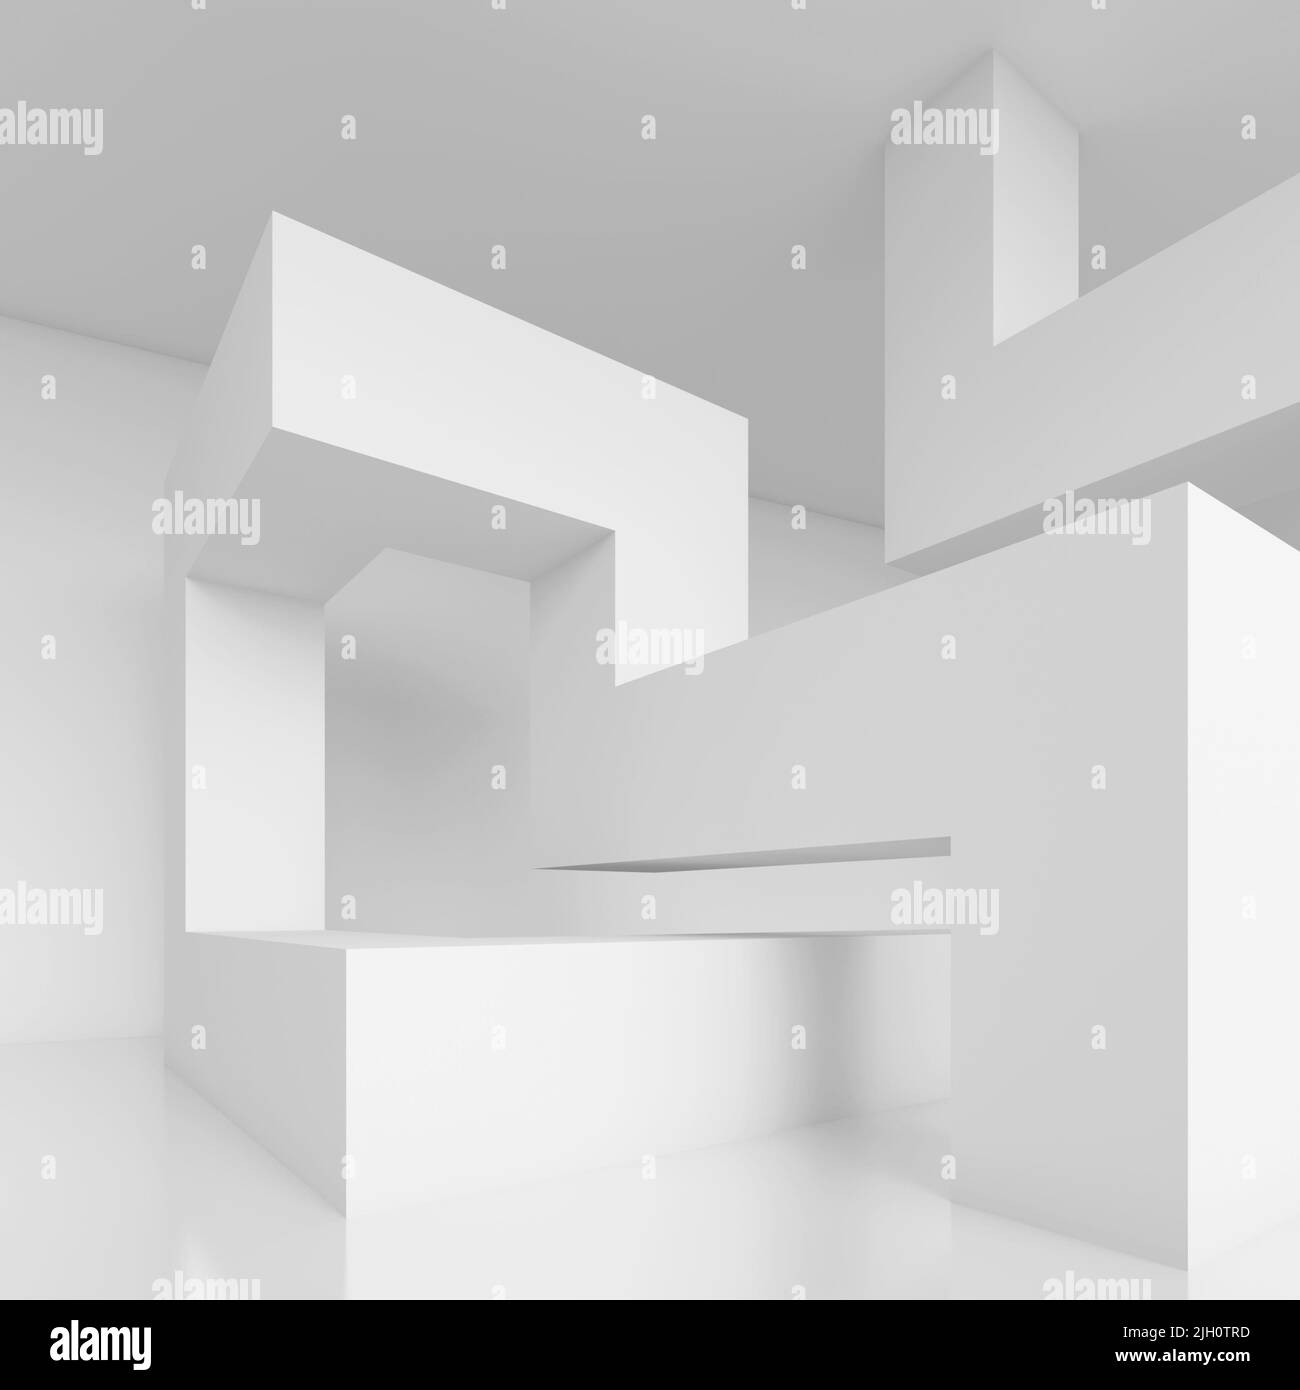 3D Illustration du fond blanc de l'architecture moderne. Blocs de construction abstraits. Conception de formes géométriques minimales Banque D'Images